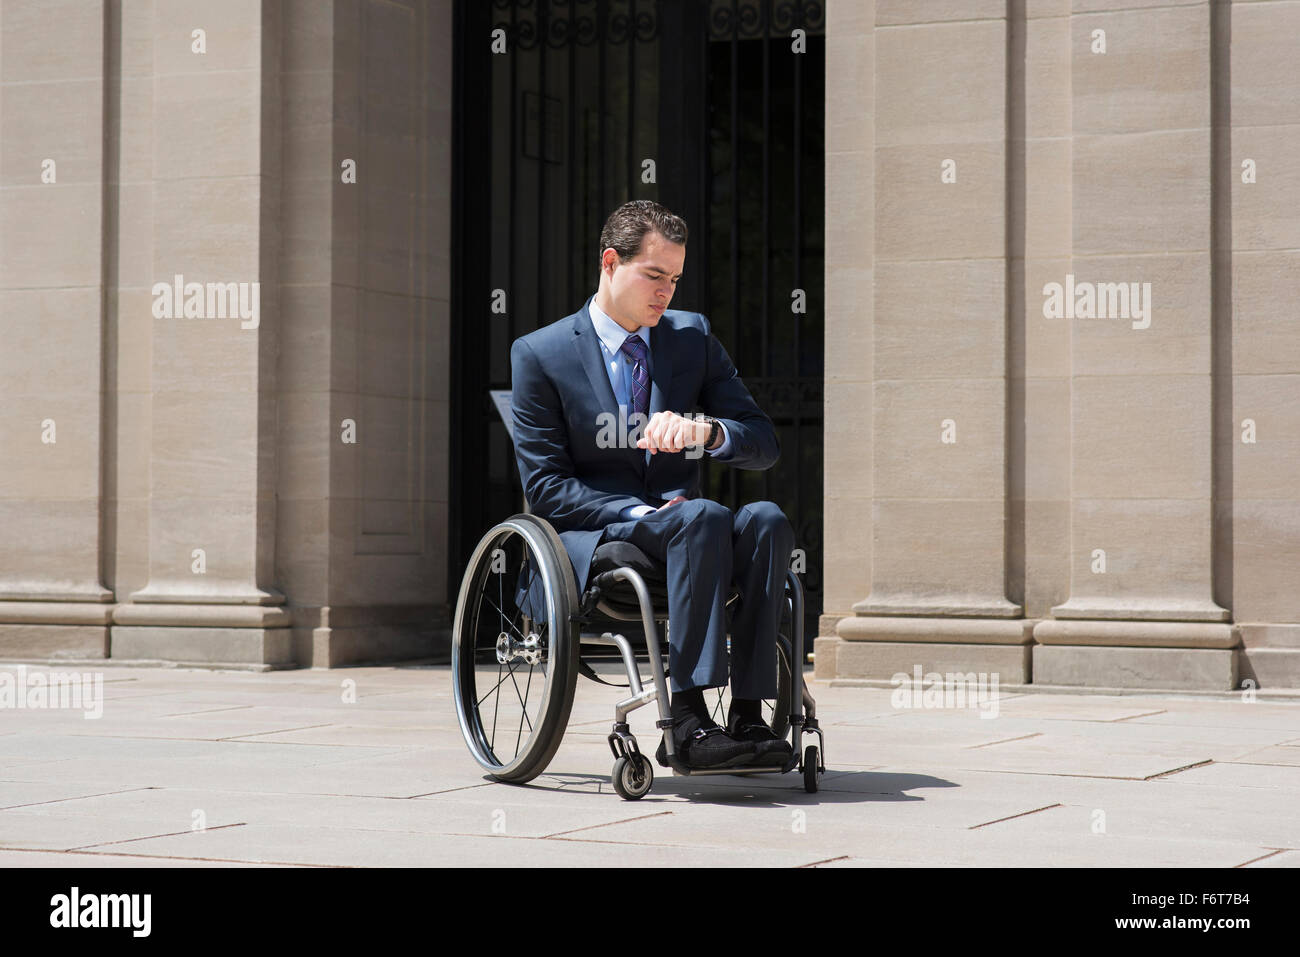 Paraplegic businessman in wheelchair checking watch Stock Photo